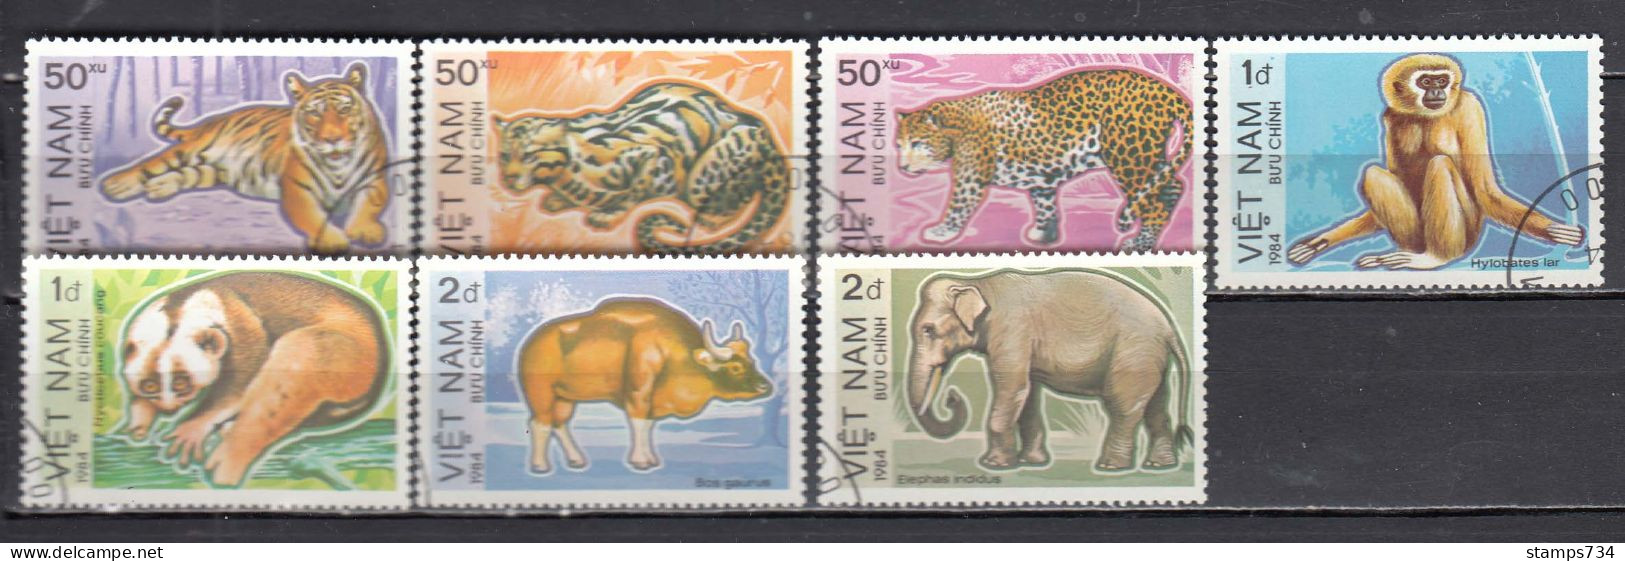 Vietnam 1984 - Animals, Mi-Nr. 1410/16, Used - Vietnam